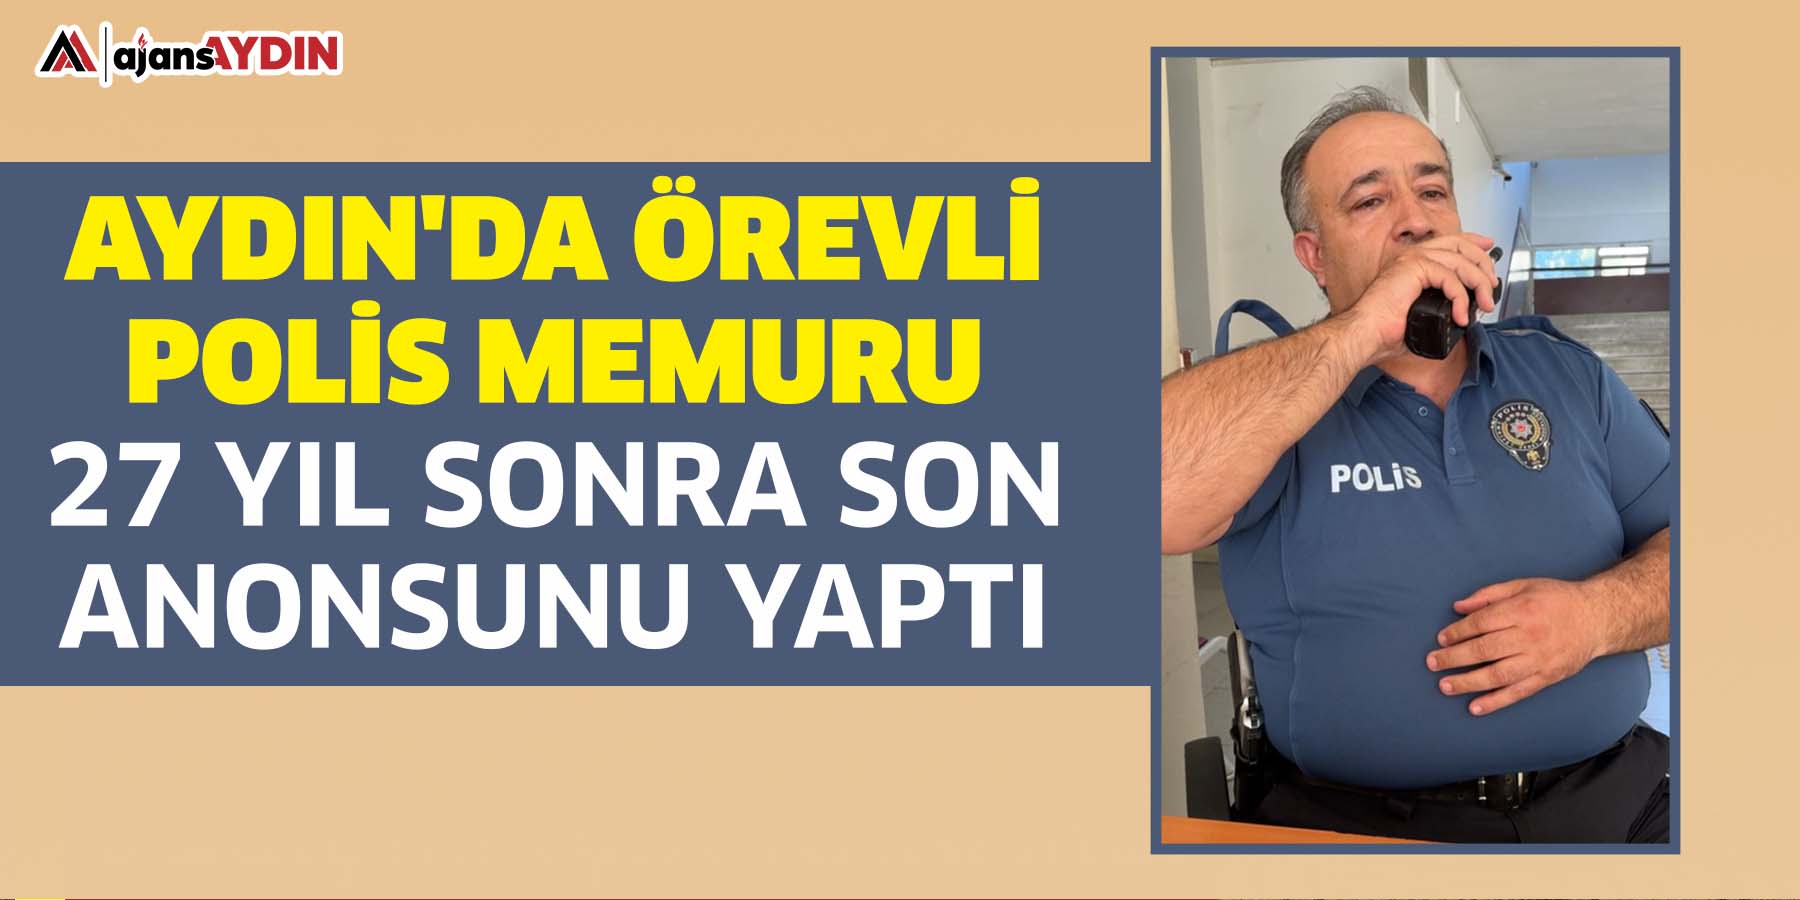 Aydın'da görevli polis memuru 27 yıl sonra son anonsunu yaptı